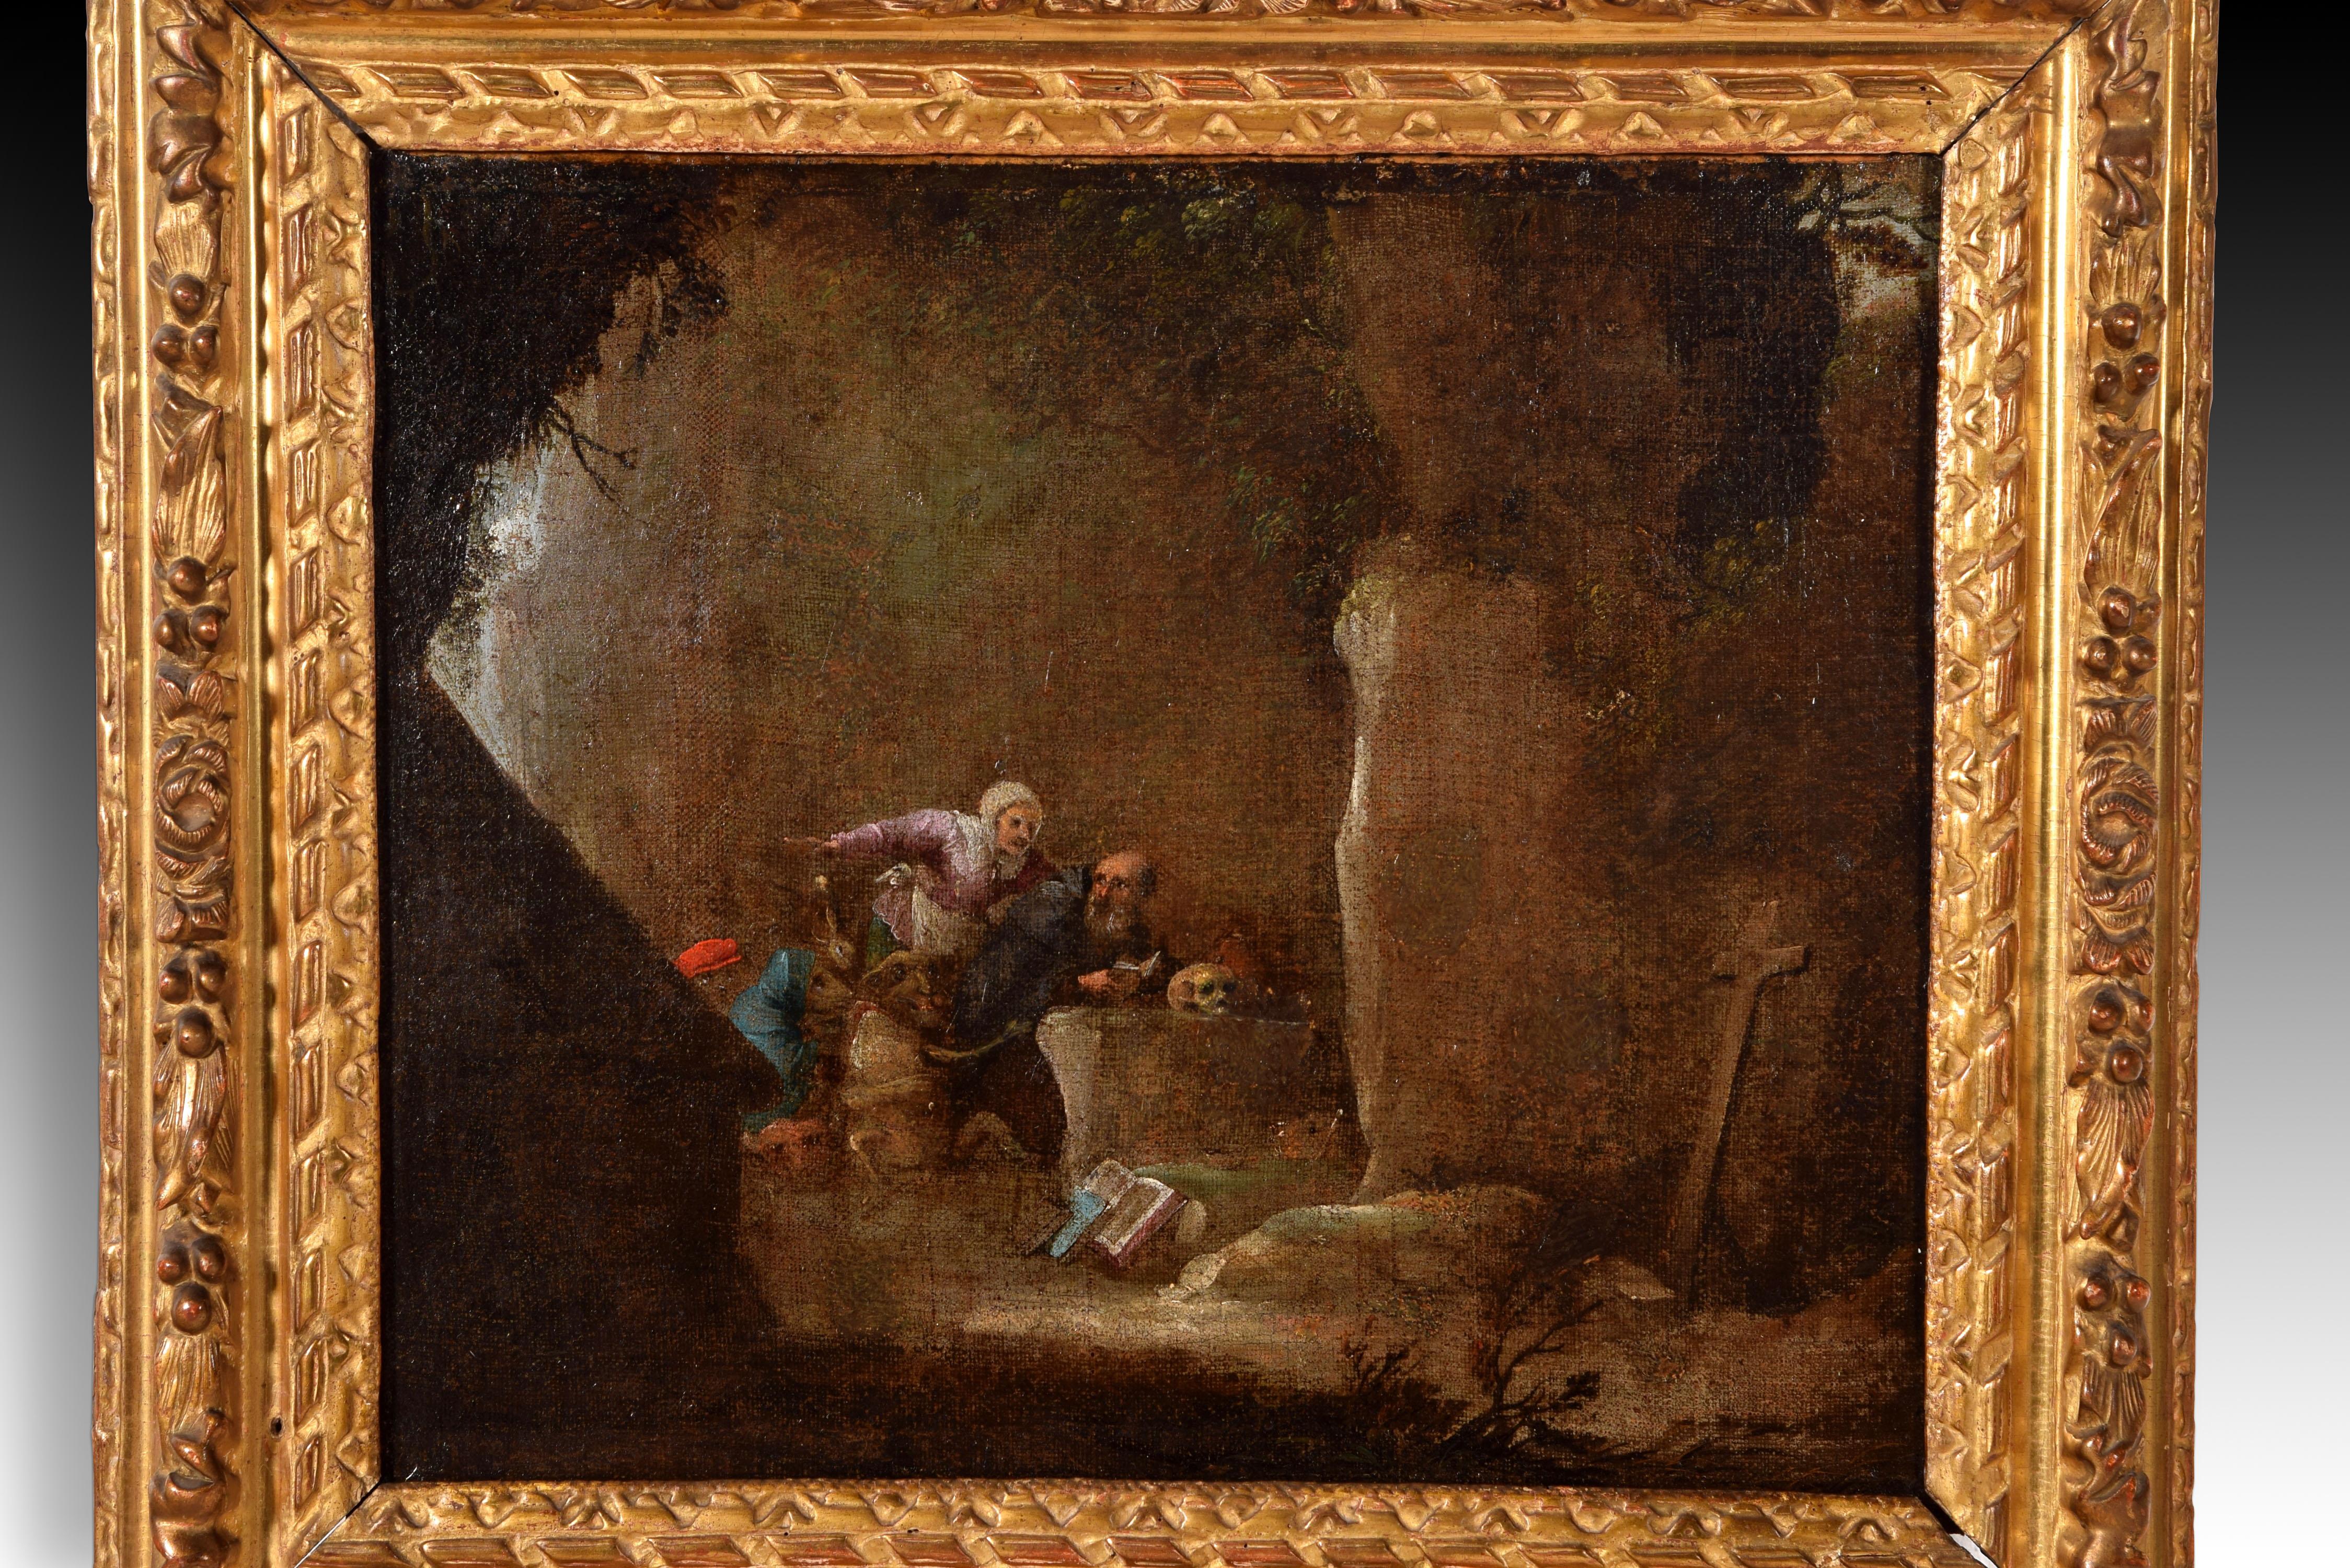 Die Versuchungen von San Antonio's Abad. Öl auf Leinwand. 17. Jahrhundert, nach dem Vorbild von David Teniers II (Antwerpen, 1610-Brüssel, 1690). 
Öl auf Leinwand, das eine figurative Szene in einer Höhle zeigt. Rechts sieht man ein gestütztes